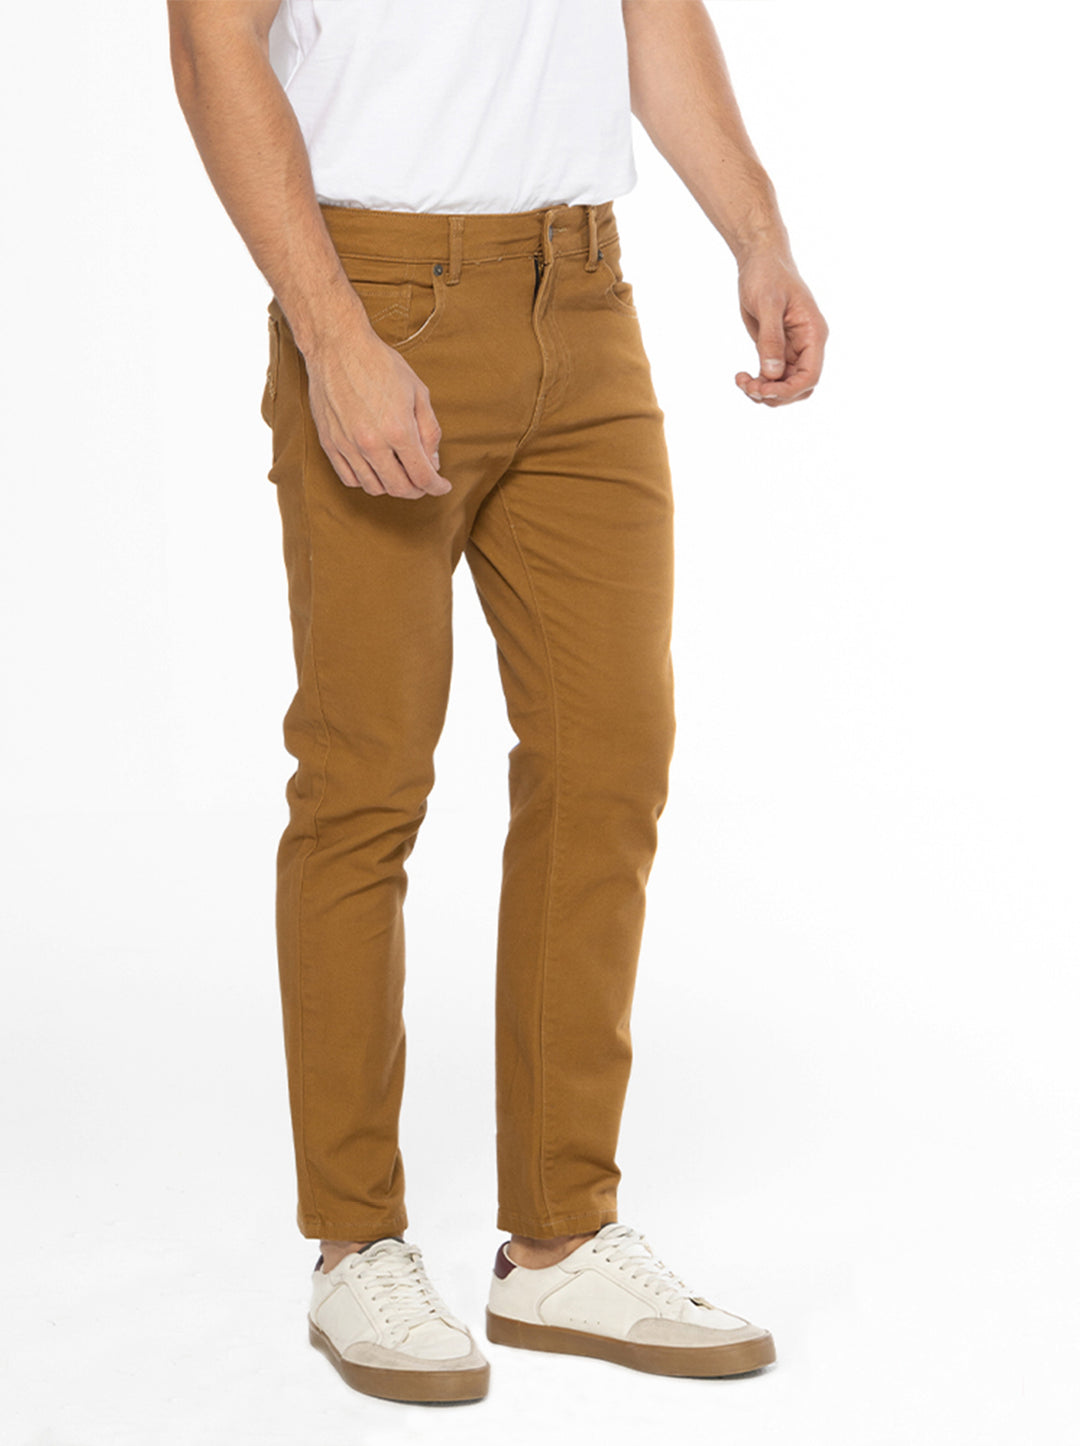 Jag Men's Colored Skinny Pants